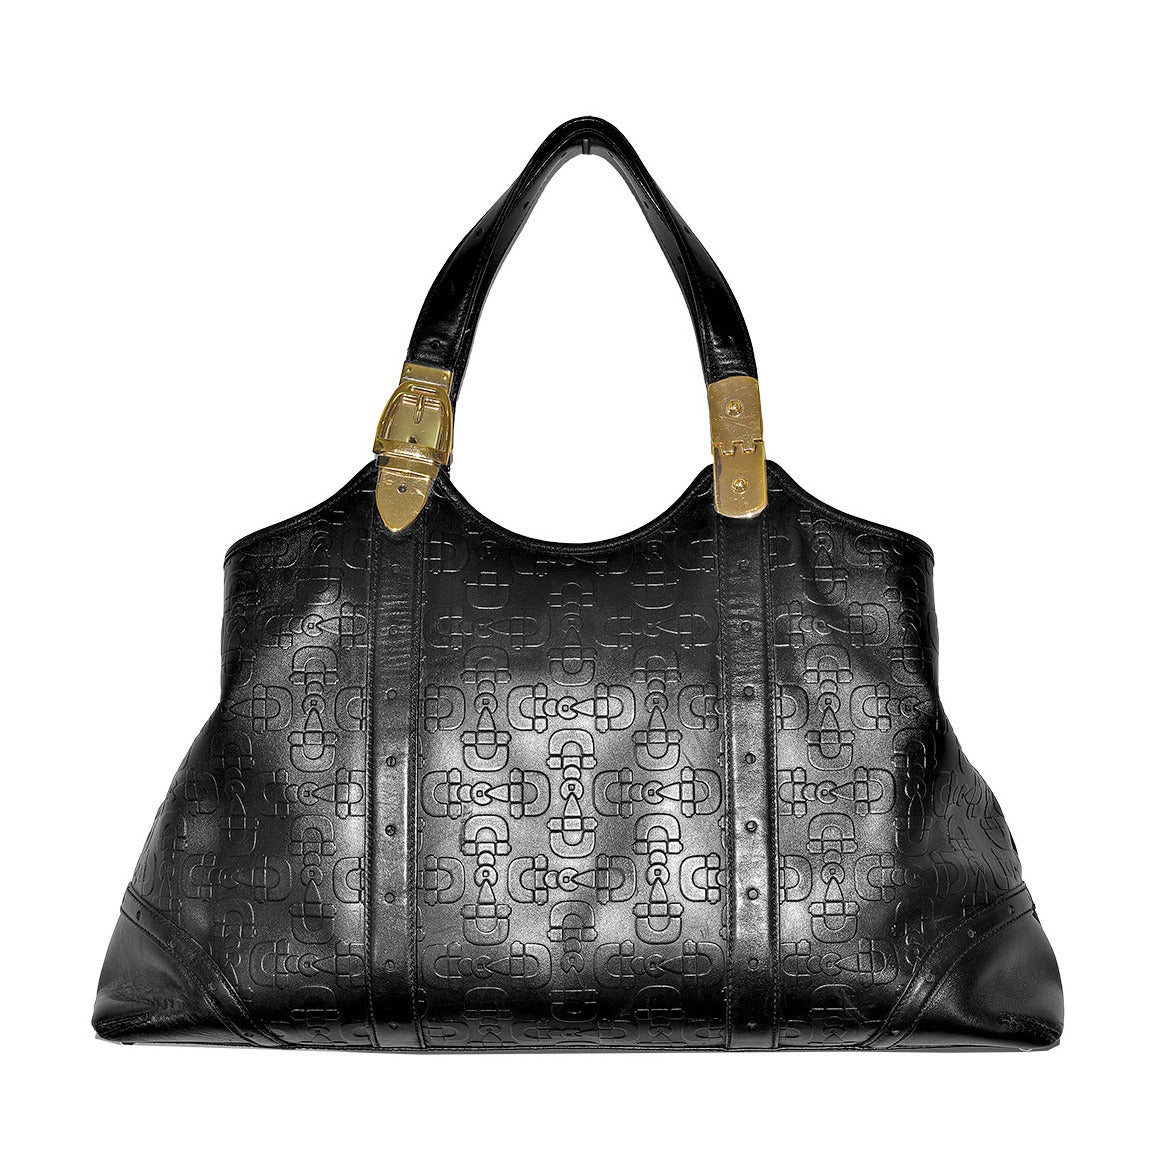 Iconic Gucci Shoulder Bag